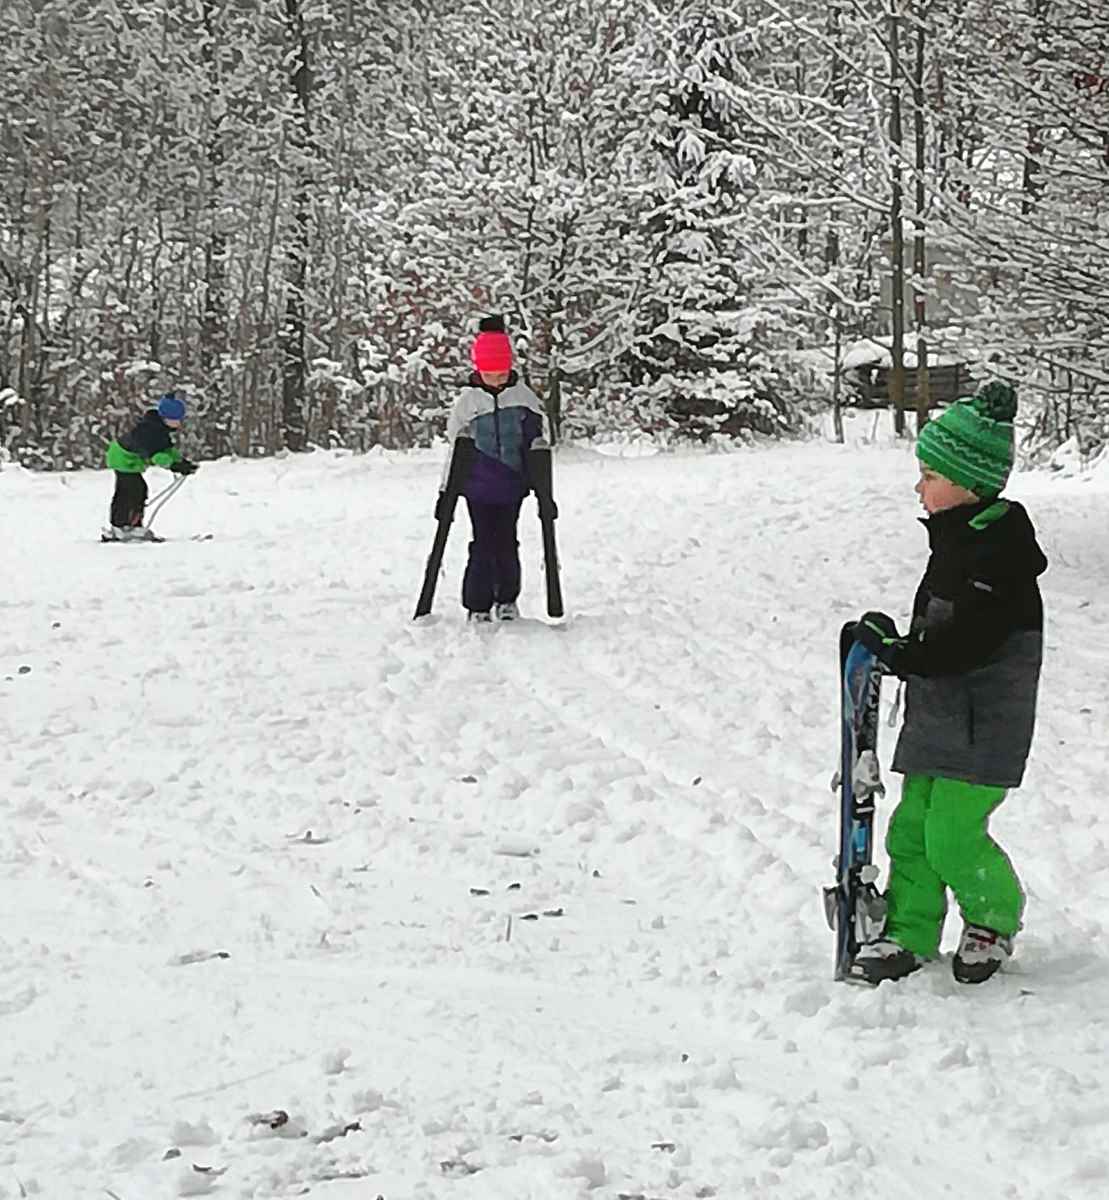 Skifahren, wie's früher war, übte Familie Meierhofer: Piste treten, Skitransport den Hang hinauf zu Fuß und dann geht's kurz, aber herrlich wieder hinab.